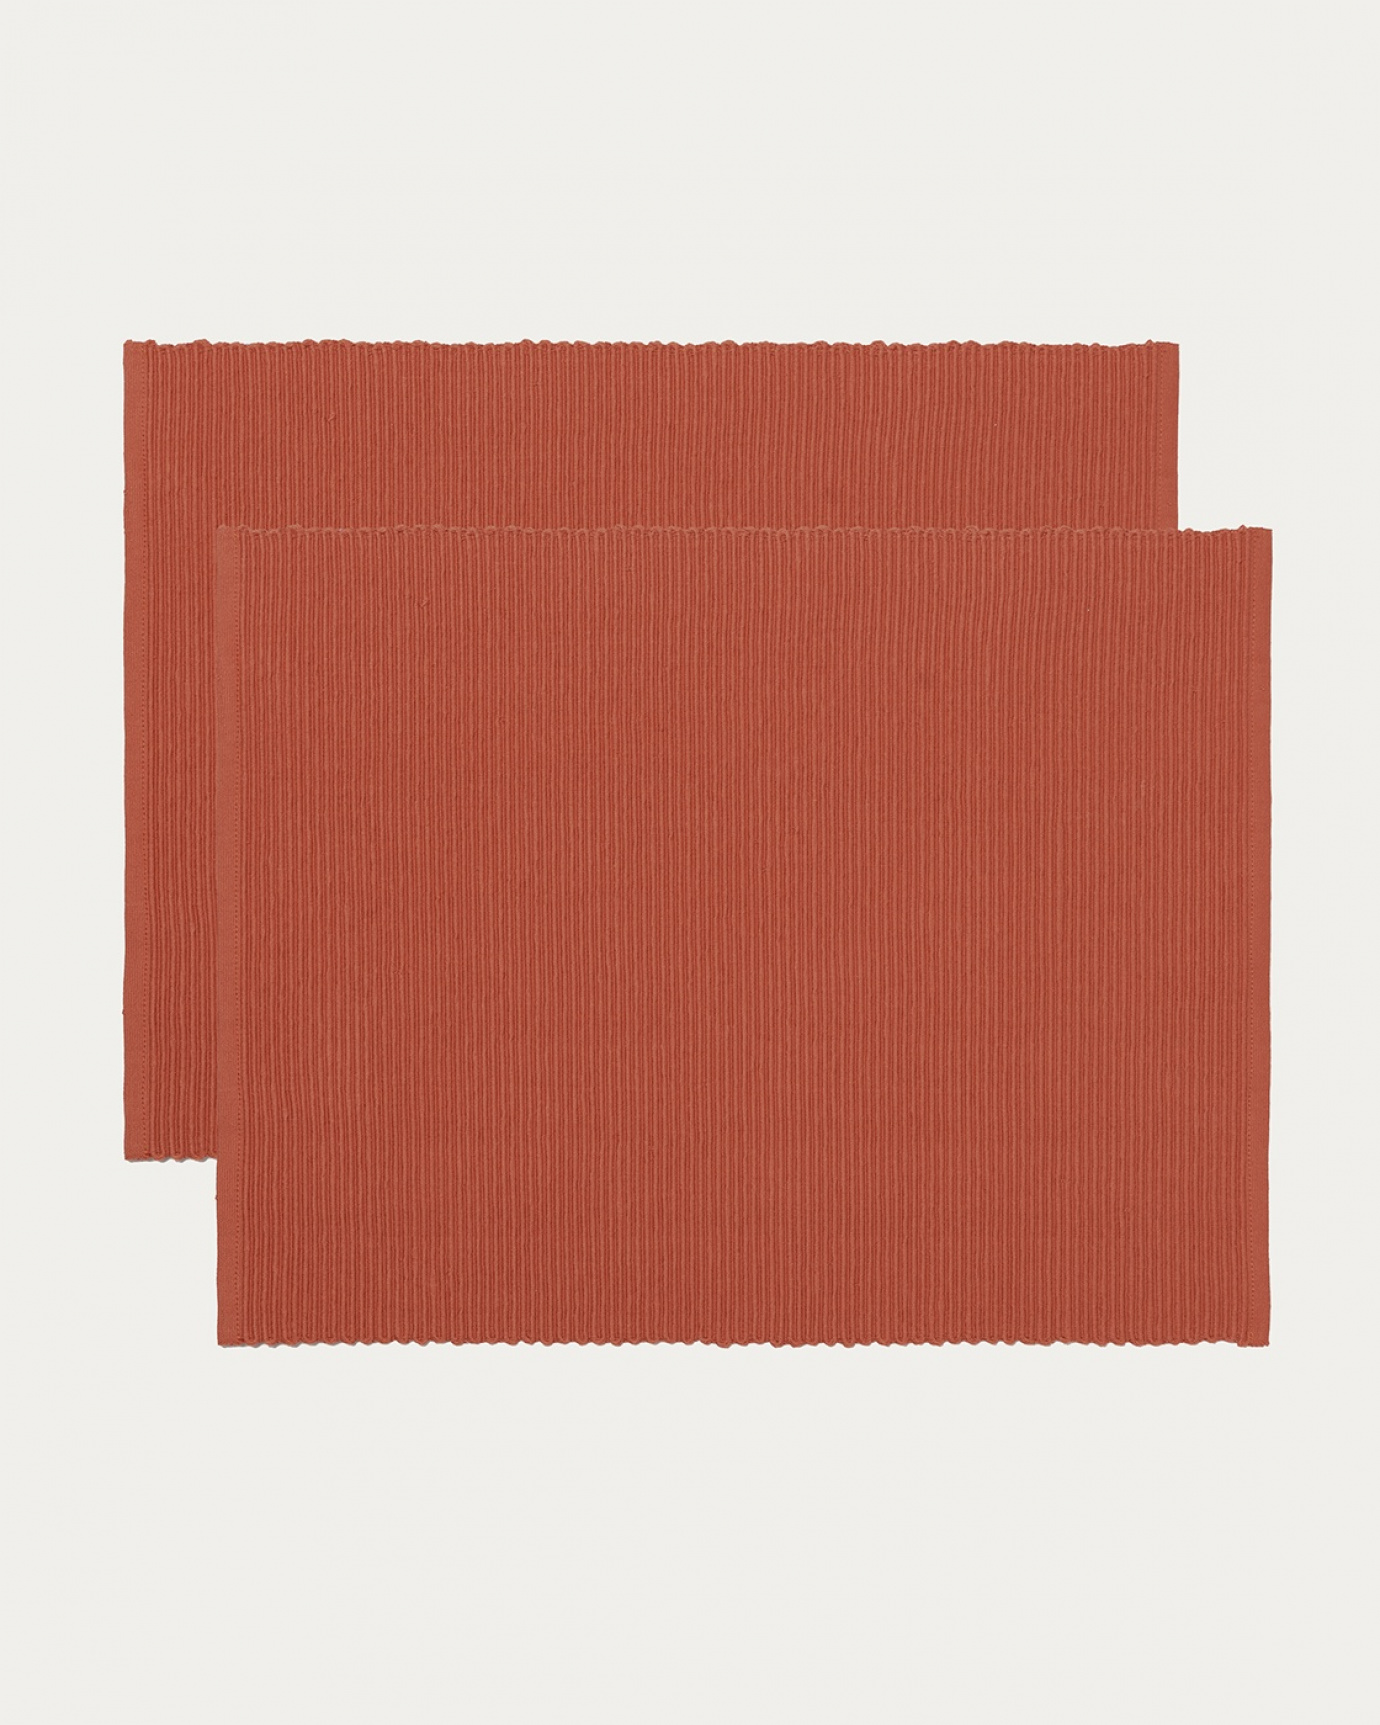 Produktbild rostorange UNI Tischset aus weicher Baumwolle in Rippenqualität von LINUM DESIGN. Größe 35x46 cm und in 2er-Pack verkauft.